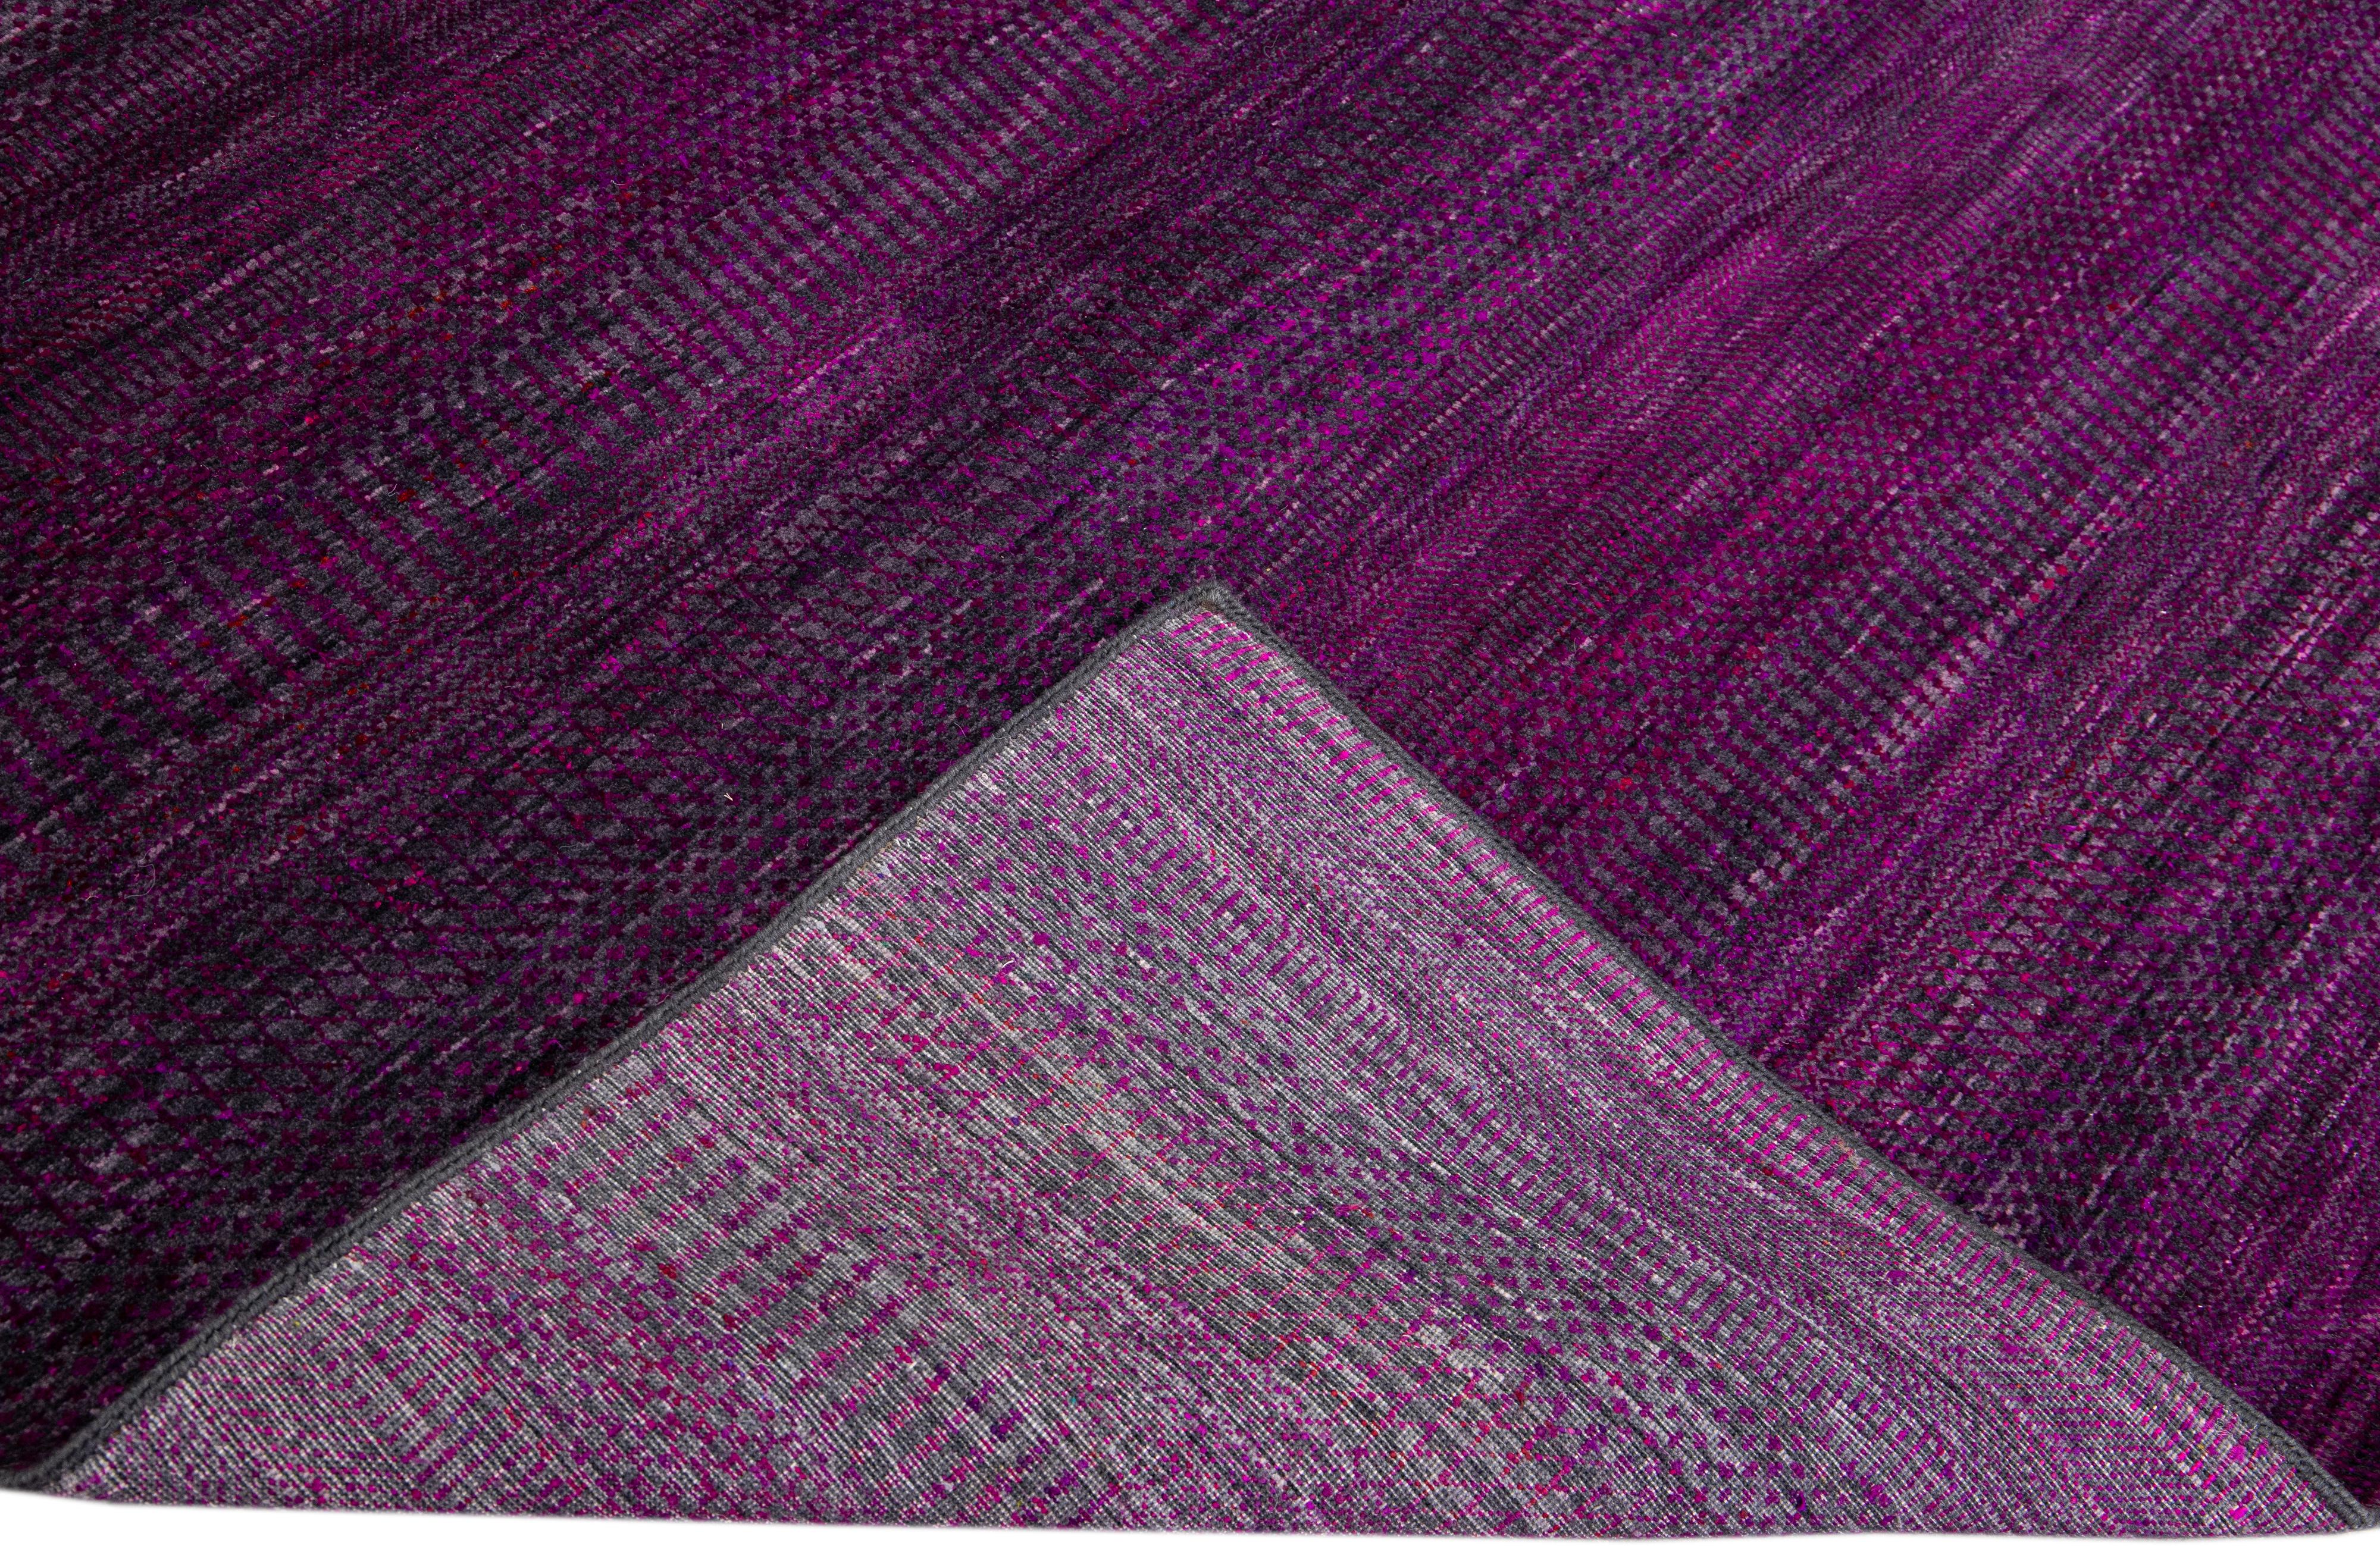 Wunderschöner handgeknüpfter Savannah-Teppich aus Wolle mit einem fein detaillierten violetten Feld in einem geometrischen Allover-Muster.

Dieser Teppich misst: 10